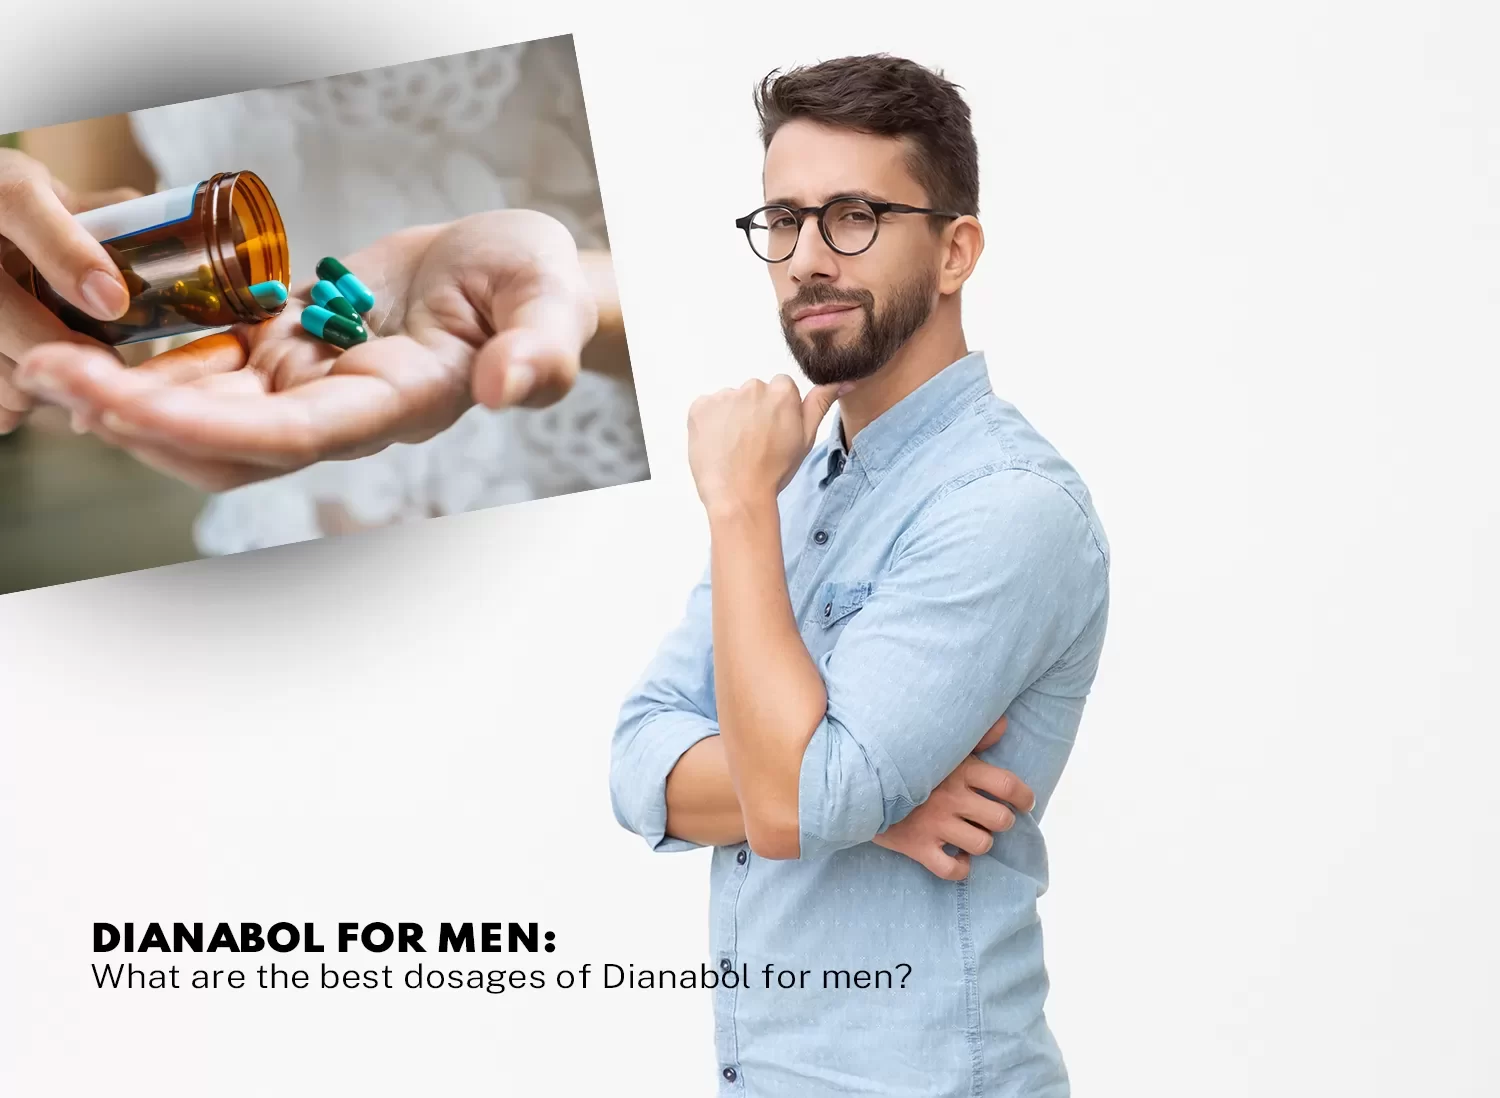 Dianabol dosages for men